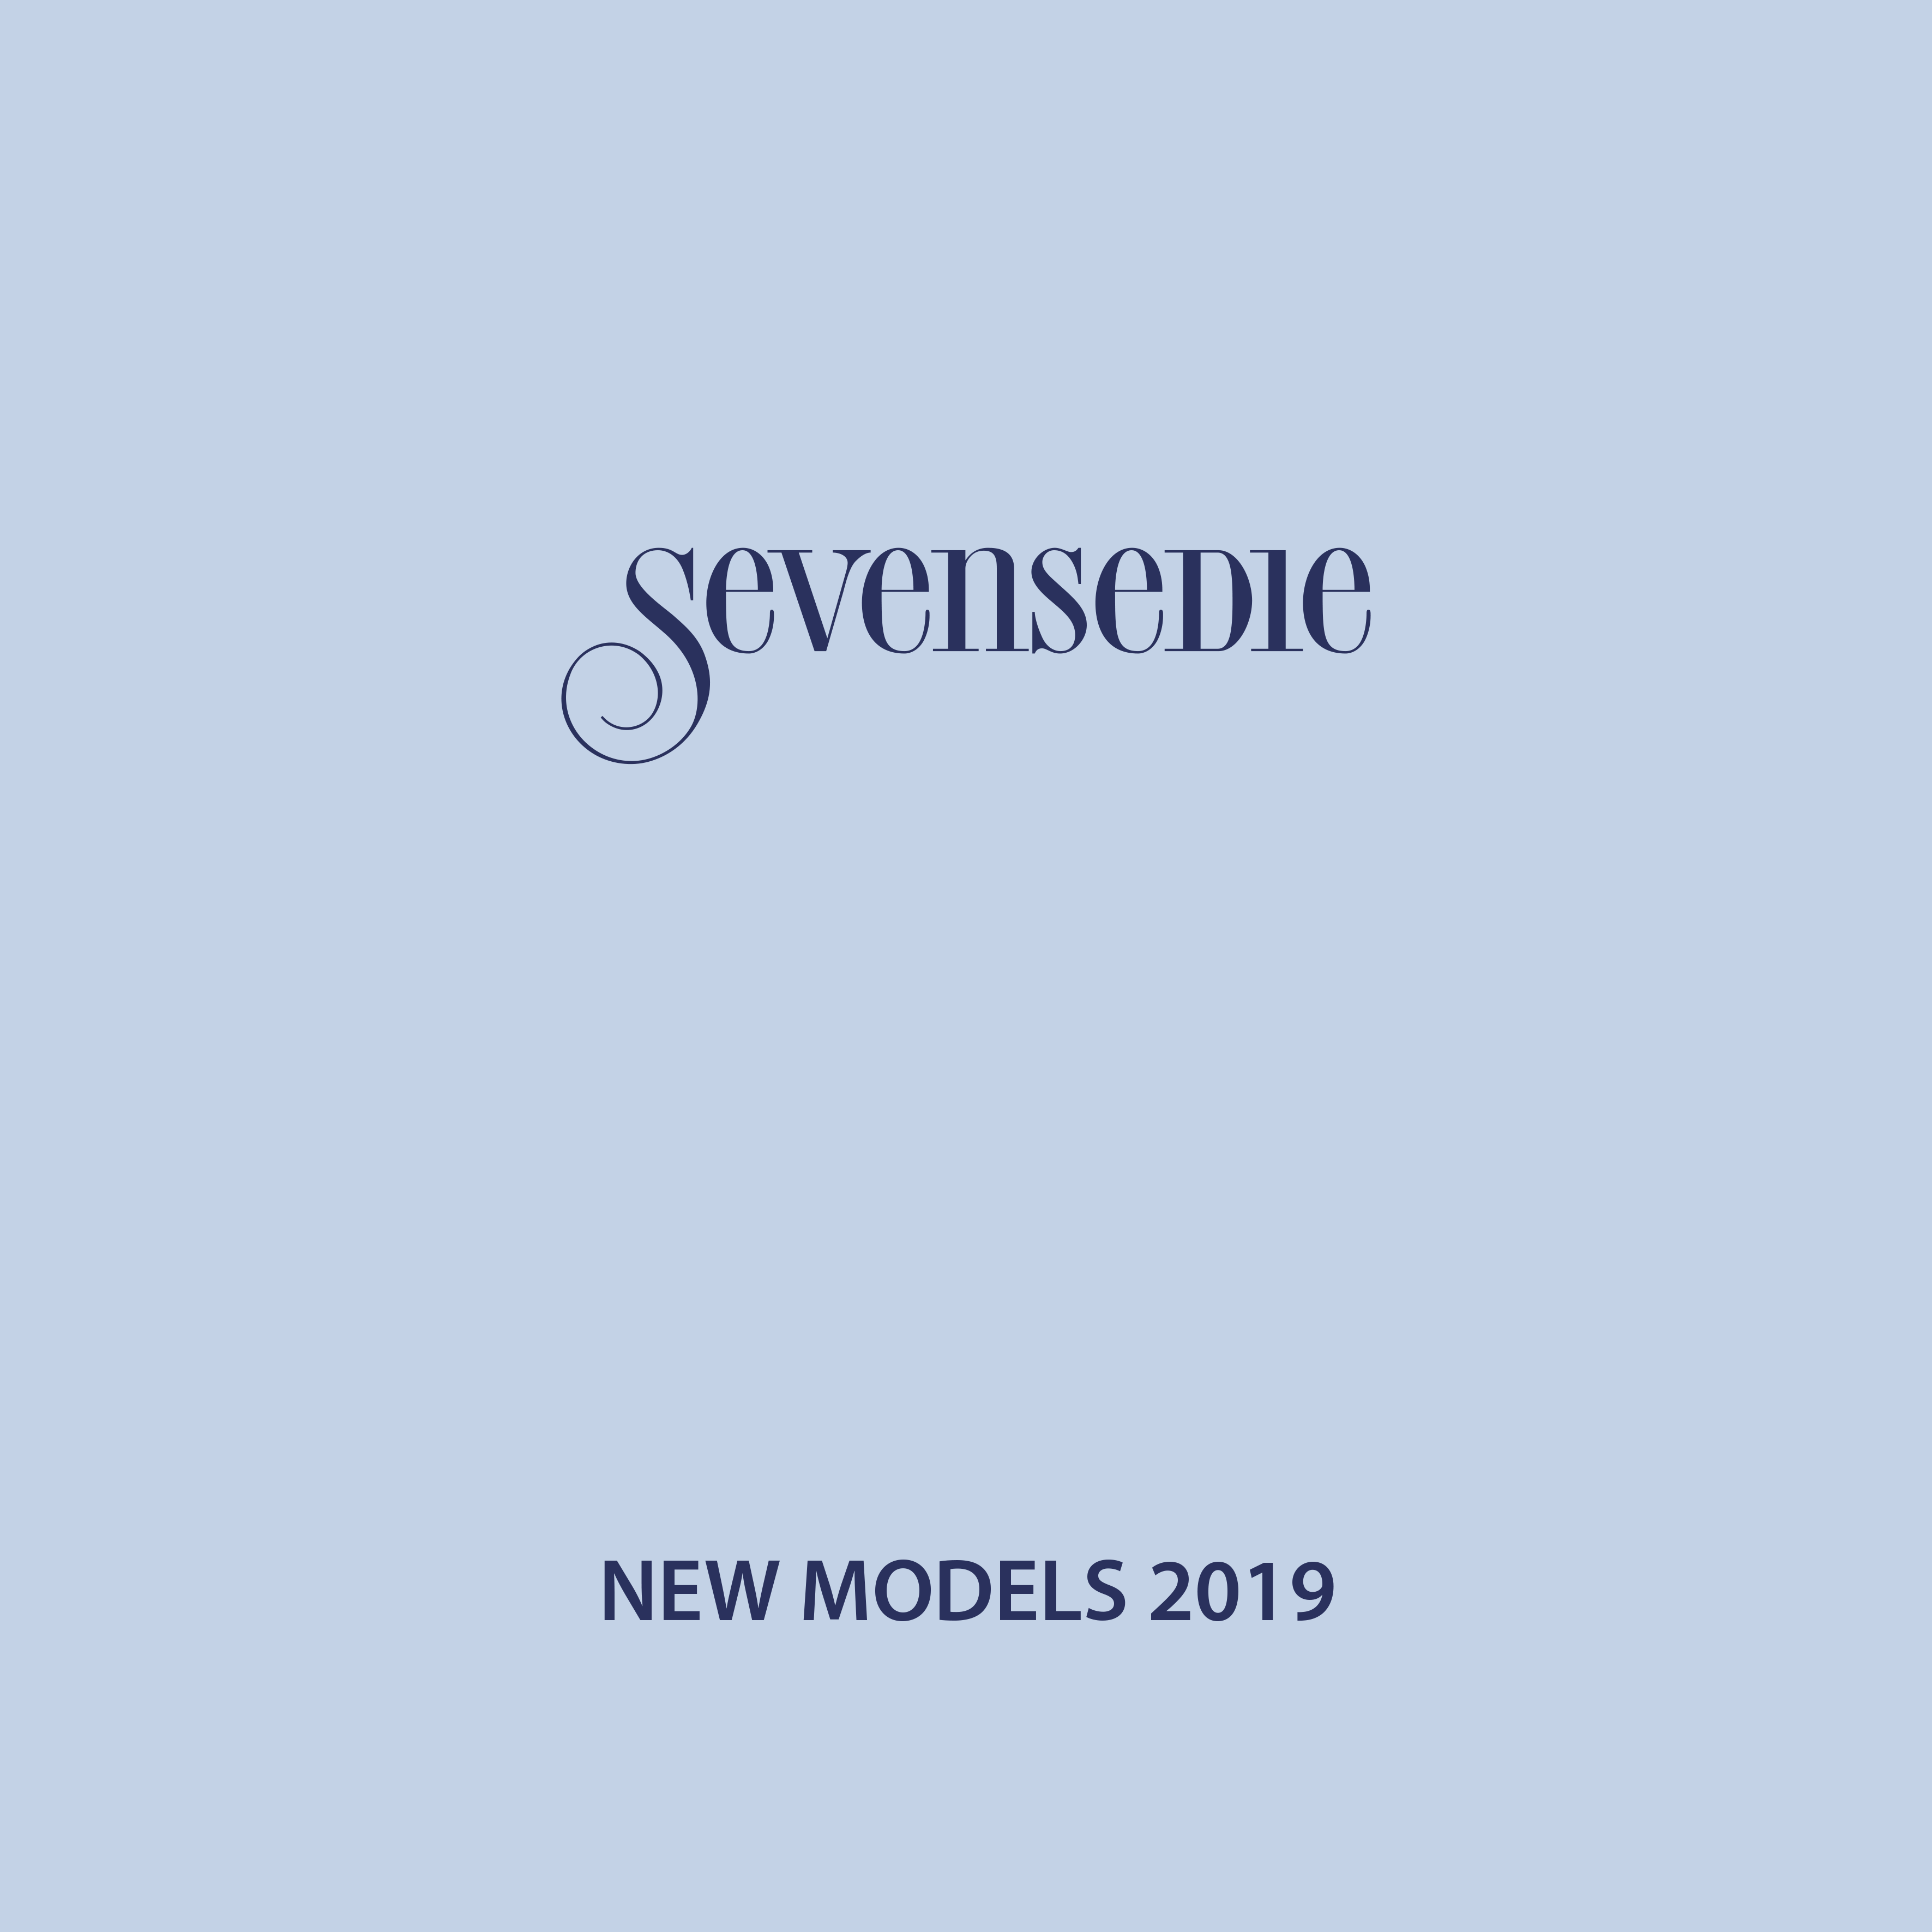 New models 2019